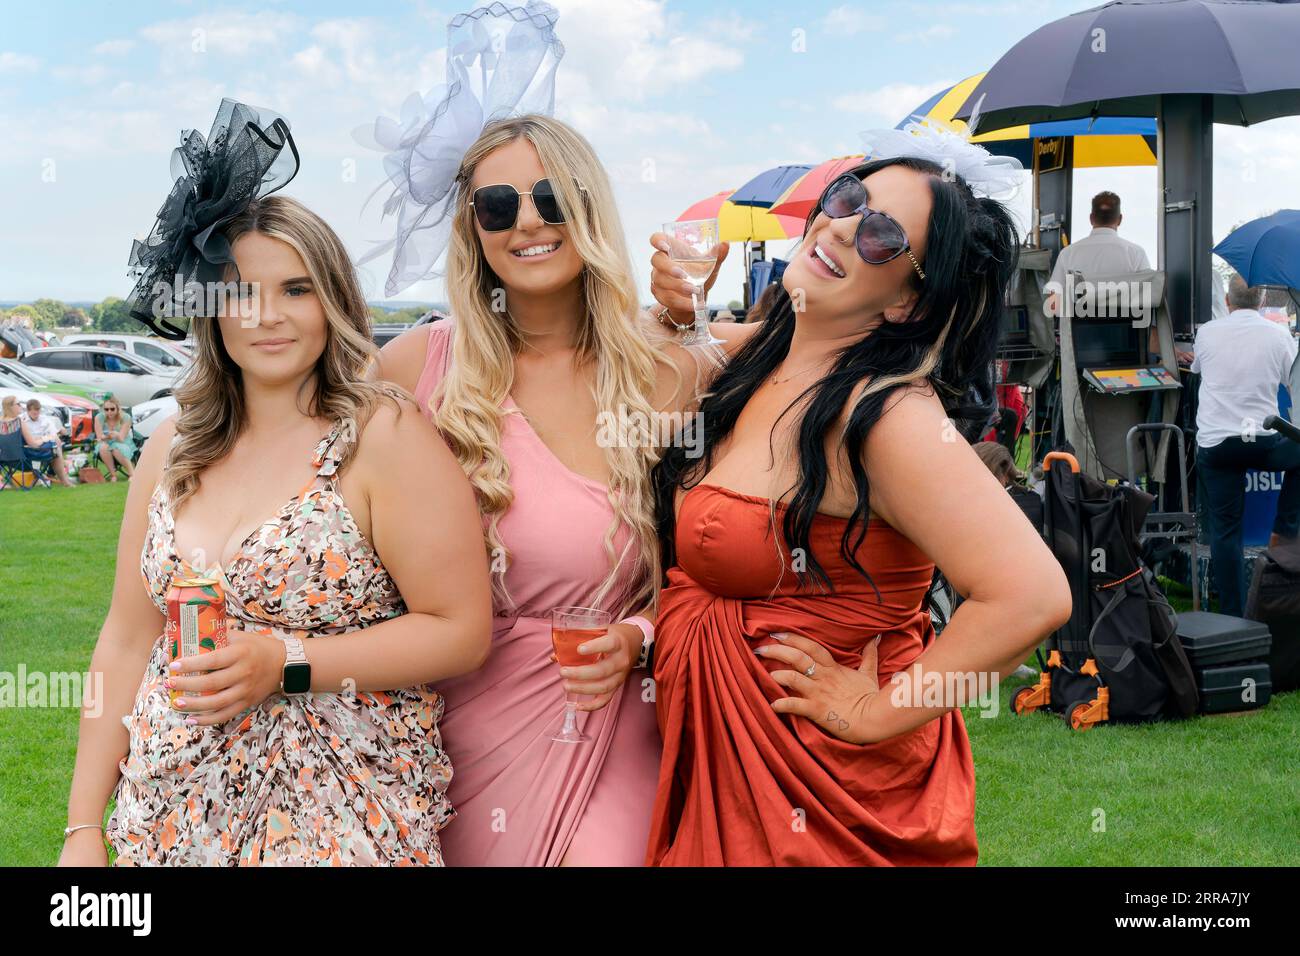 Un groupe de quatre femmes riant et souriant et vêtues de vêtements colorés profite de la Journée des dames aux courses à Beverley, au Royaume-Uni. Banque D'Images